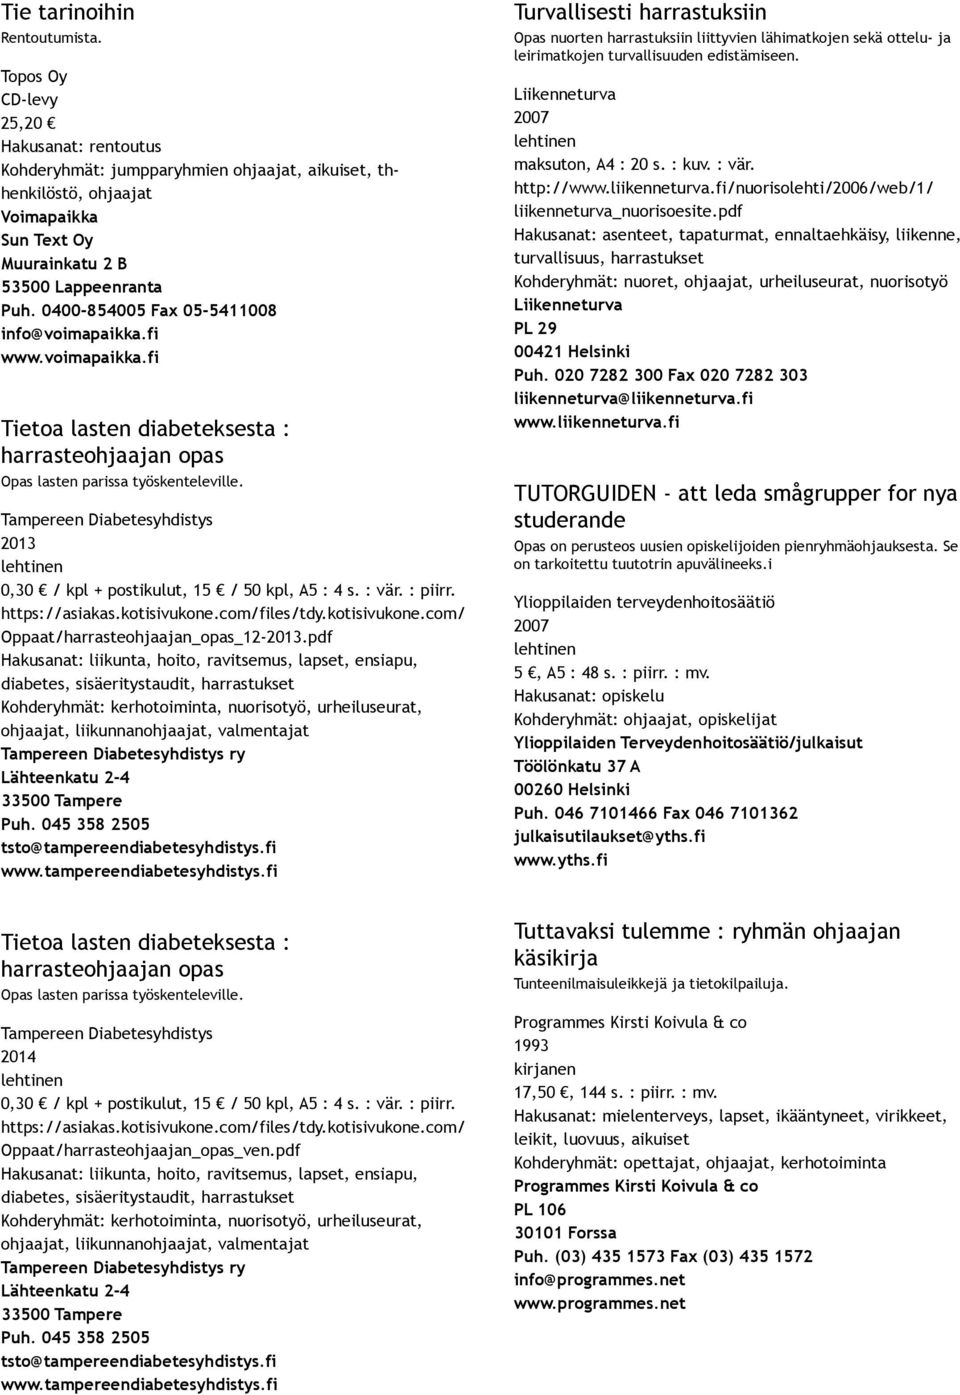 pdf Hakusanat: liikunta, hoito, ravitsemus, lapset, ensiapu, diabetes, sisäeritystaudit, harrastukset Kohderyhmät: kerhotoiminta, nuorisotyö, urheiluseurat,, liikunnan, valmentajat Tampereen